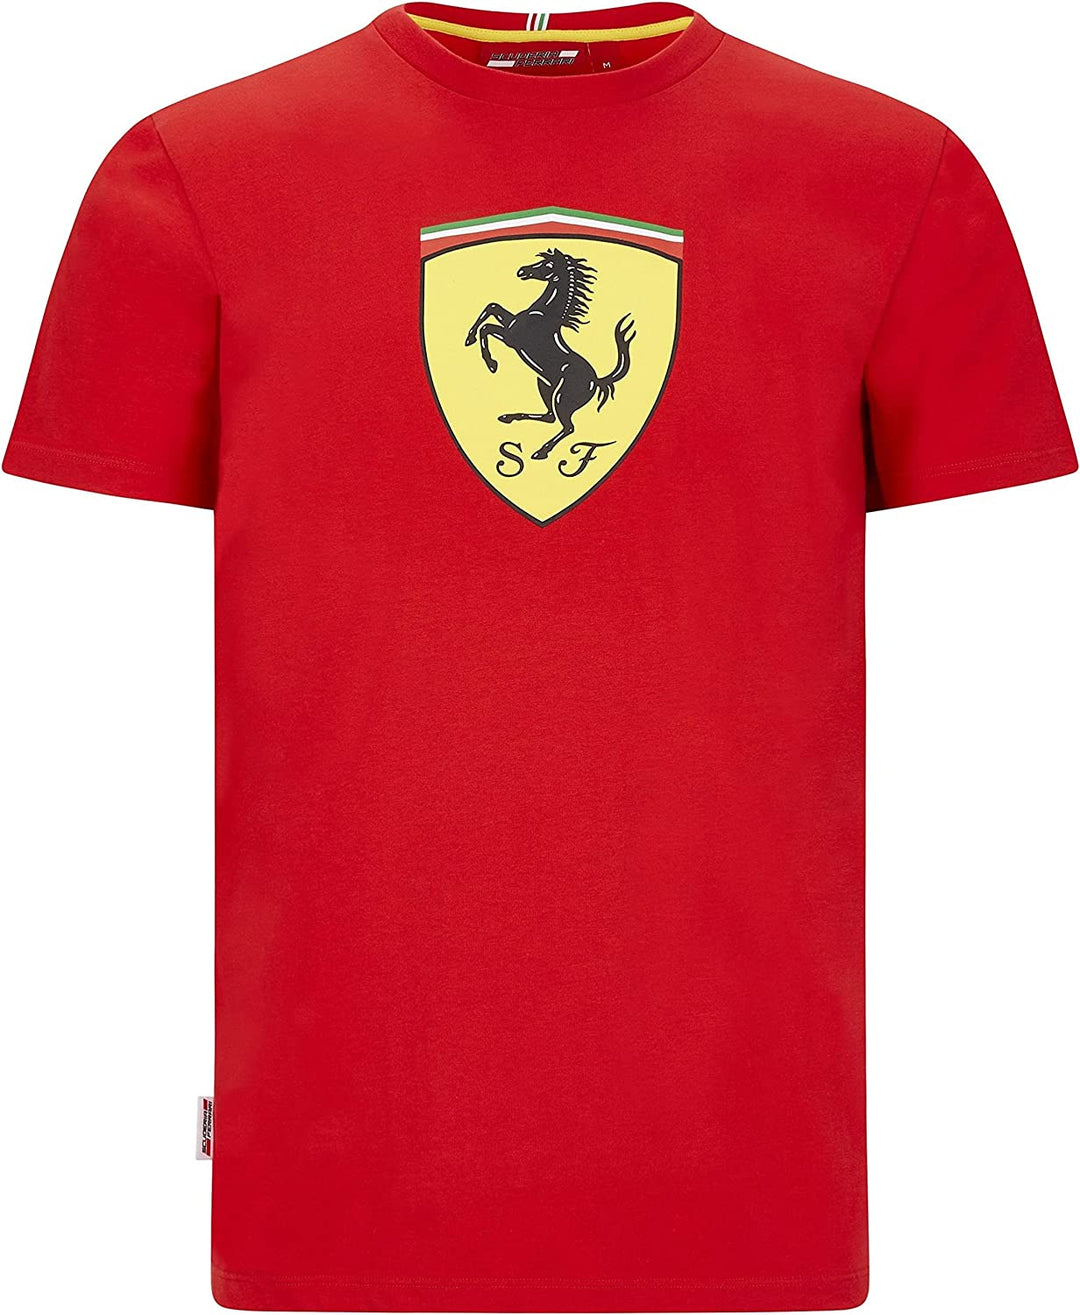 Scuderia Ferrari Big Shield Logo T-Shirt - Kids - Red